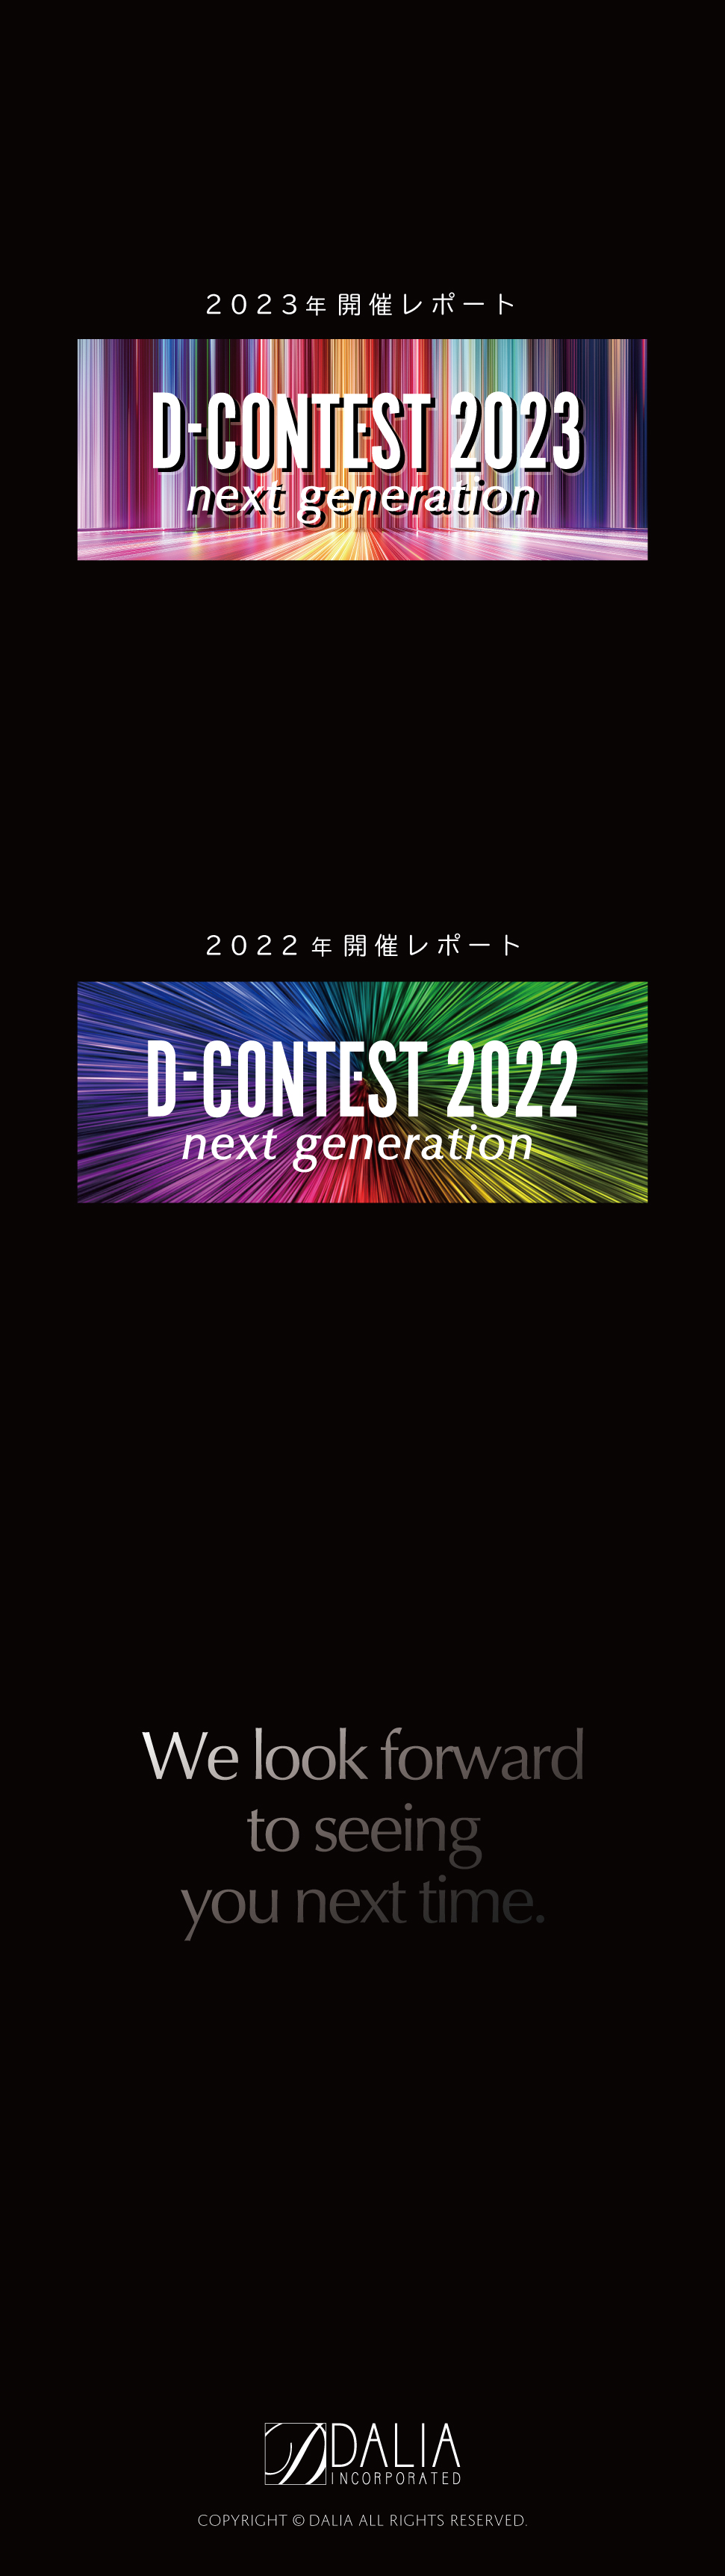 Dコンテスト2023年開催レポートおよび2022年開催レポート、Dコンテストは株式会社ダリアが主催する美容コンテストです